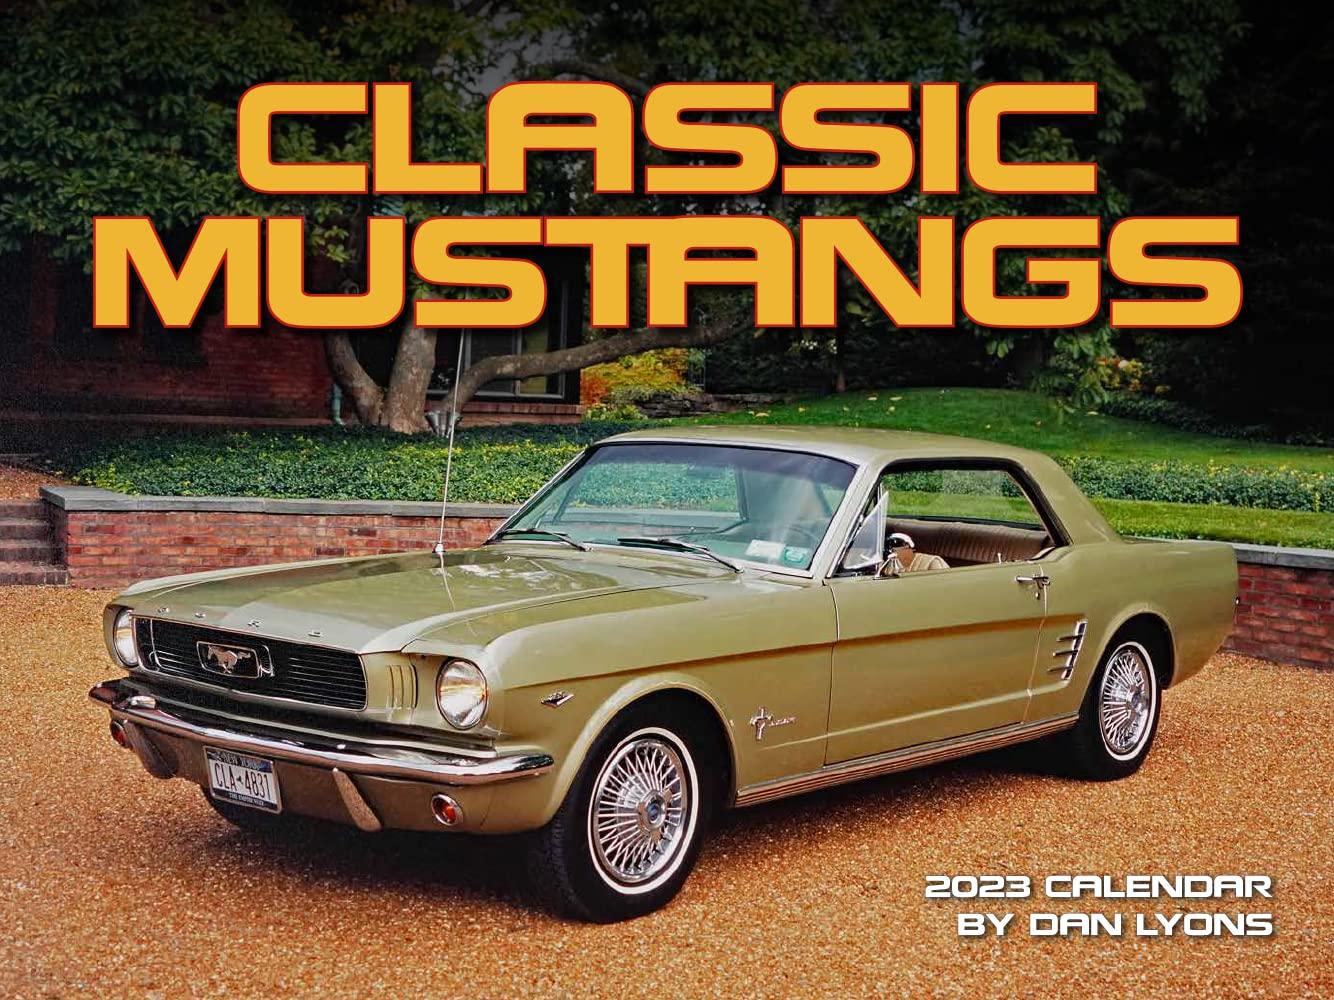 Tide-mark Mustangs Classic 2023 Wall Calendar